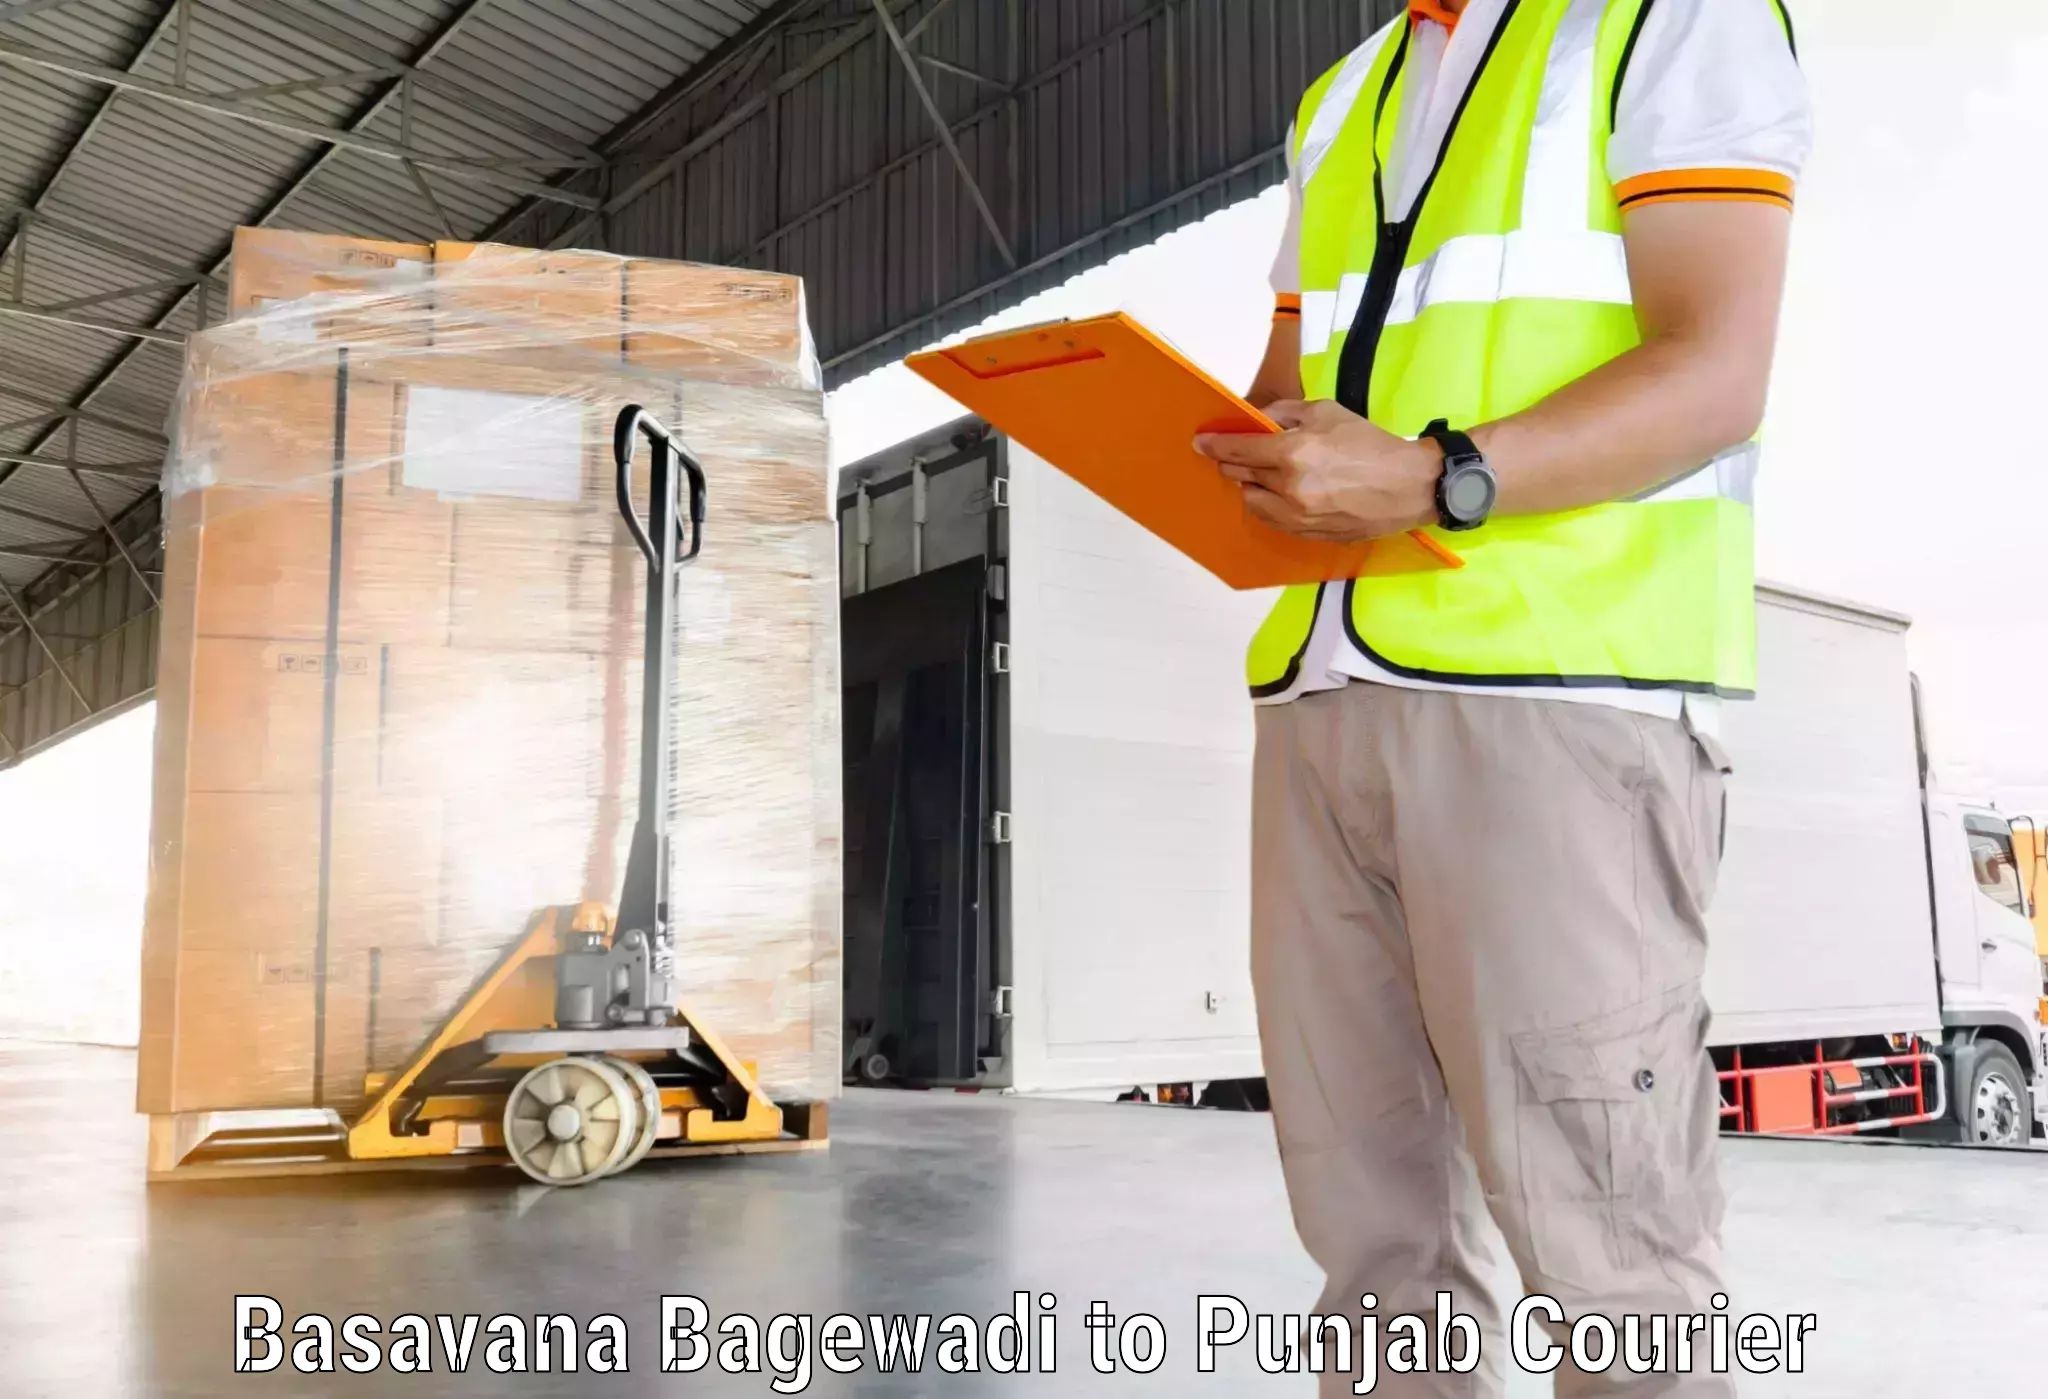 Efficient parcel transport Basavana Bagewadi to Mandi Gobindgarh